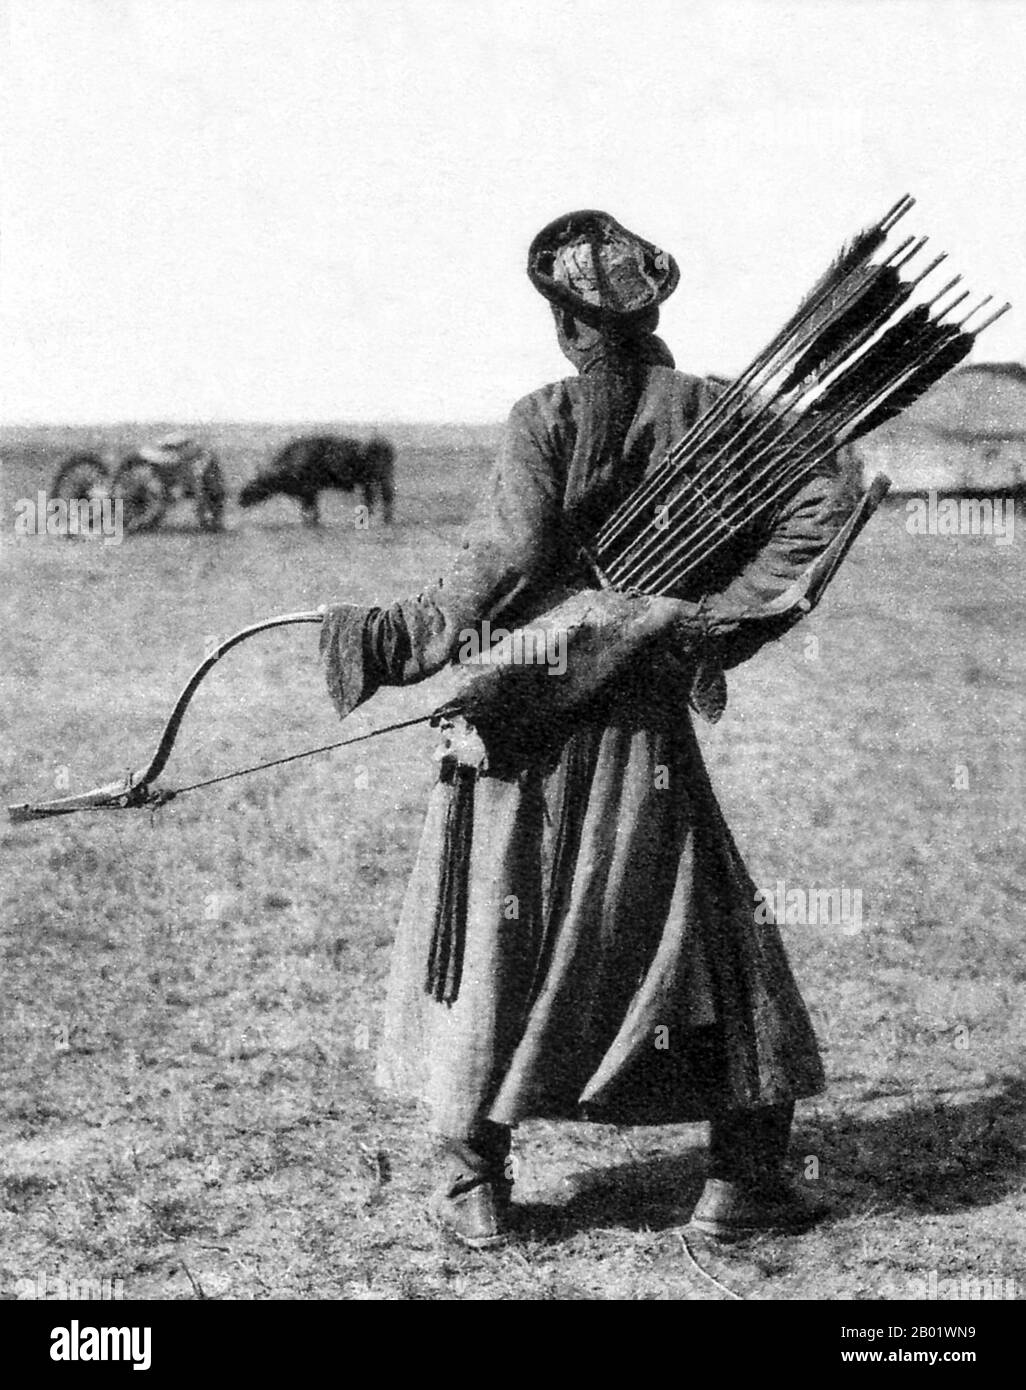 China/Innere Mongolei: Ein traditioneller mongolischer Bogenschütze im Innern Mongolischen Grasland, um 1940. Rückansicht. Der mongolische Bogen ist ein wiederkehrender Verbundbogen, der für seine militärische Wirksamkeit bekannt ist. Die alten mongolischen Bögen, die während der Zeit von Dschingis Khan verwendet wurden, waren kleiner als die modernen Waffen, die heute auf den meisten Naadam-Festivals verwendet wurden. Moderne mongolische Bögen sind größer und haben Schnur-Brücken. Das moderne Design ähnelt sehr den mandschurischen Bögen, die das chinesische Militär während der Qing-Dynastie verwendet hat. Antike und moderne mongolische Bögen sind Teil der asiatischen Tradition von Verbundbögen. Stockfoto